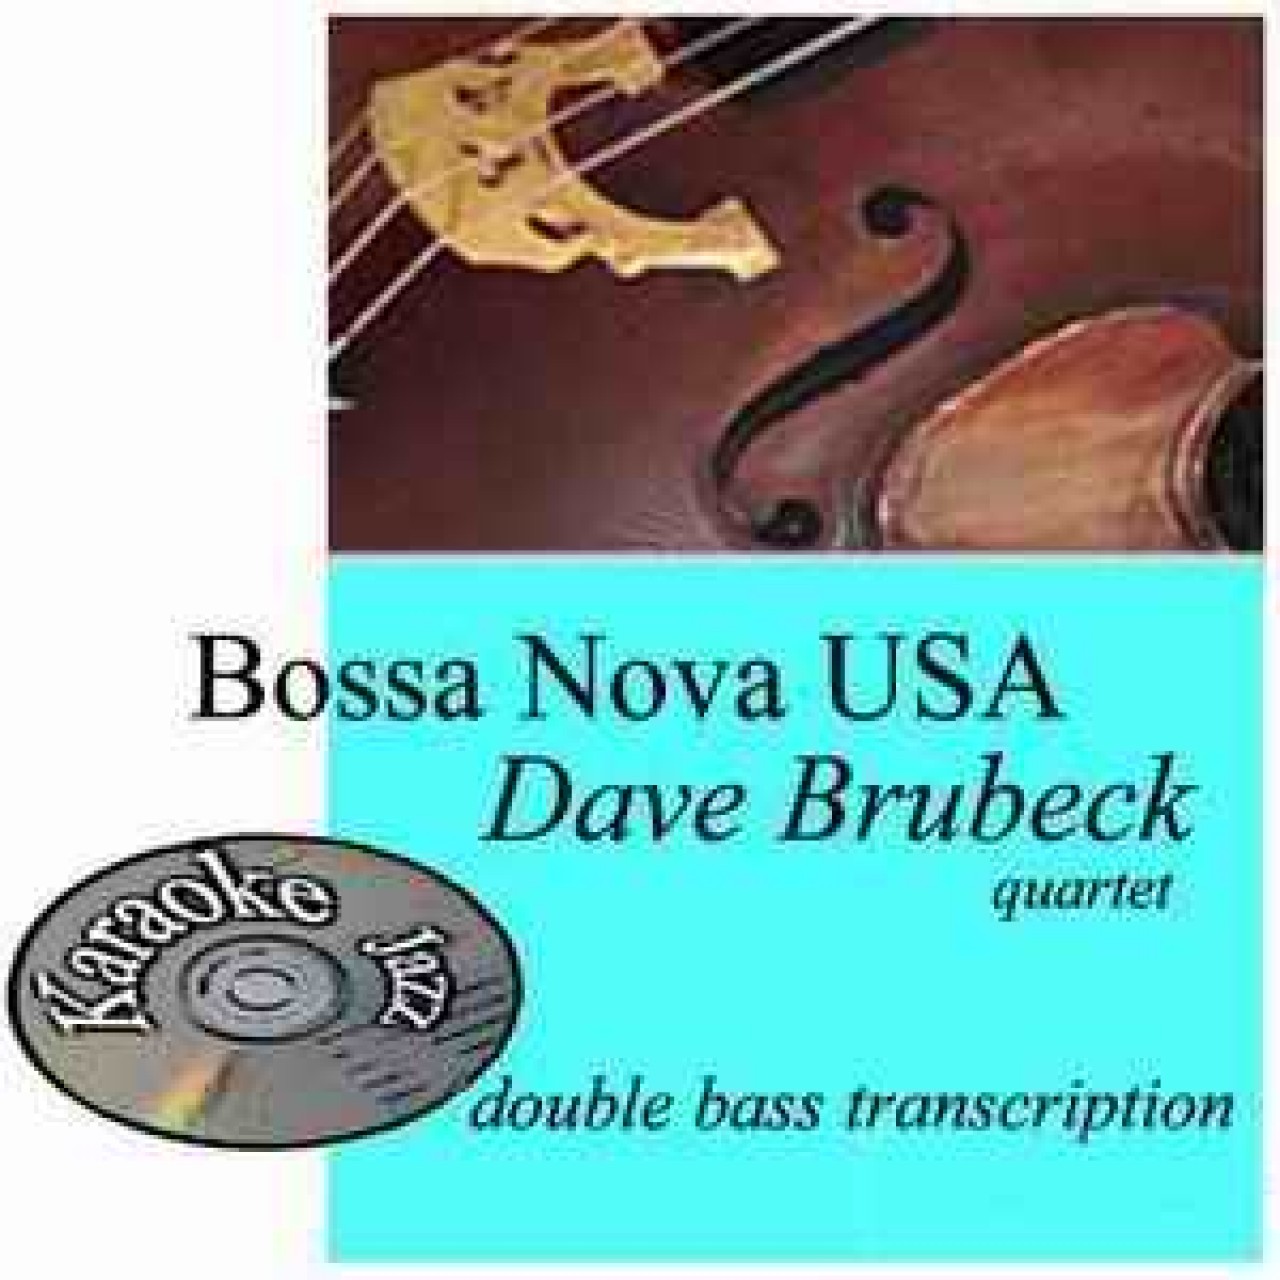 Bossa Nova USA bass